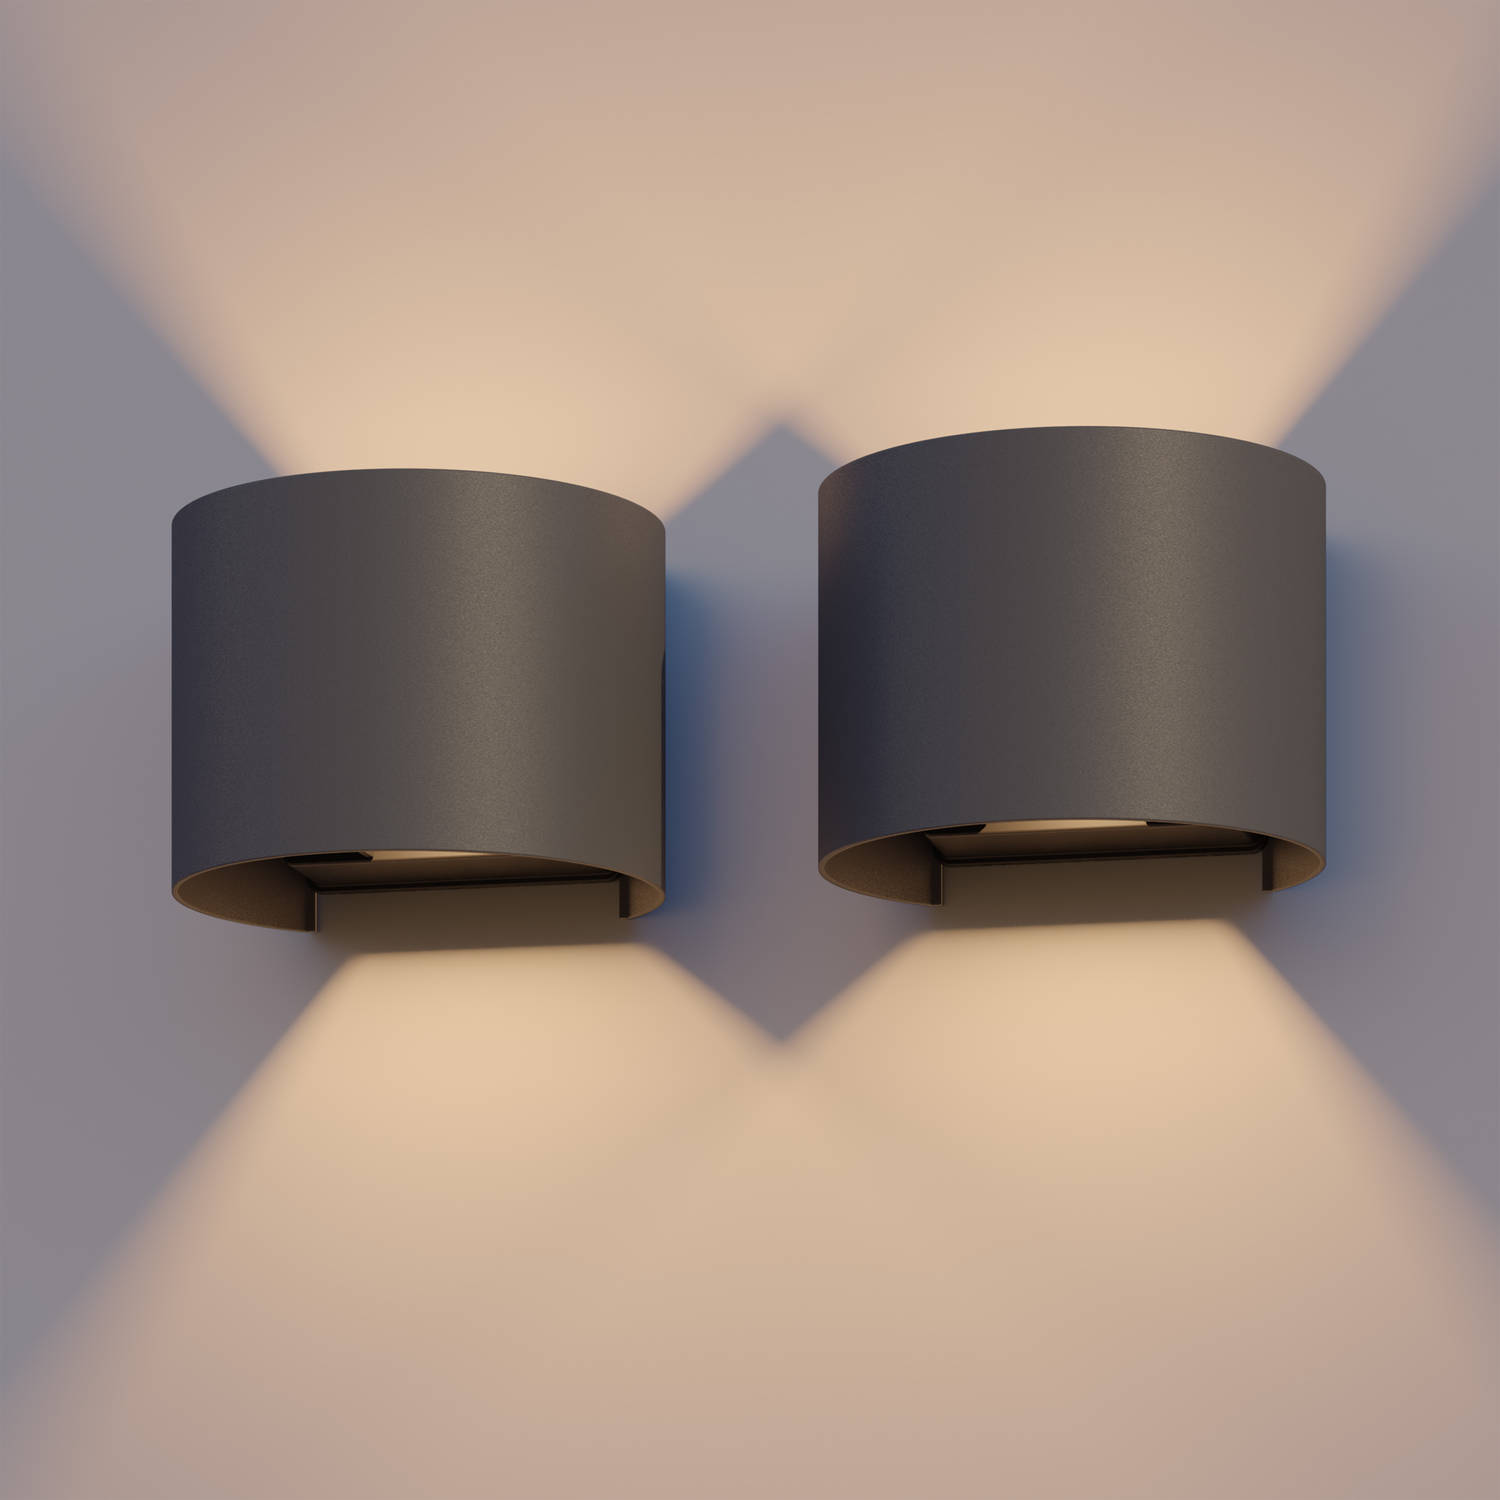 Calex LED Wandlamp Oval - Up & Down Tuinverlichting - Modern Design - Warm Wit Licht - Voor Binnen en Buiten - Verstelbare Stralingshoek - Eenvoudige Installatie - 7W - Antraciet -